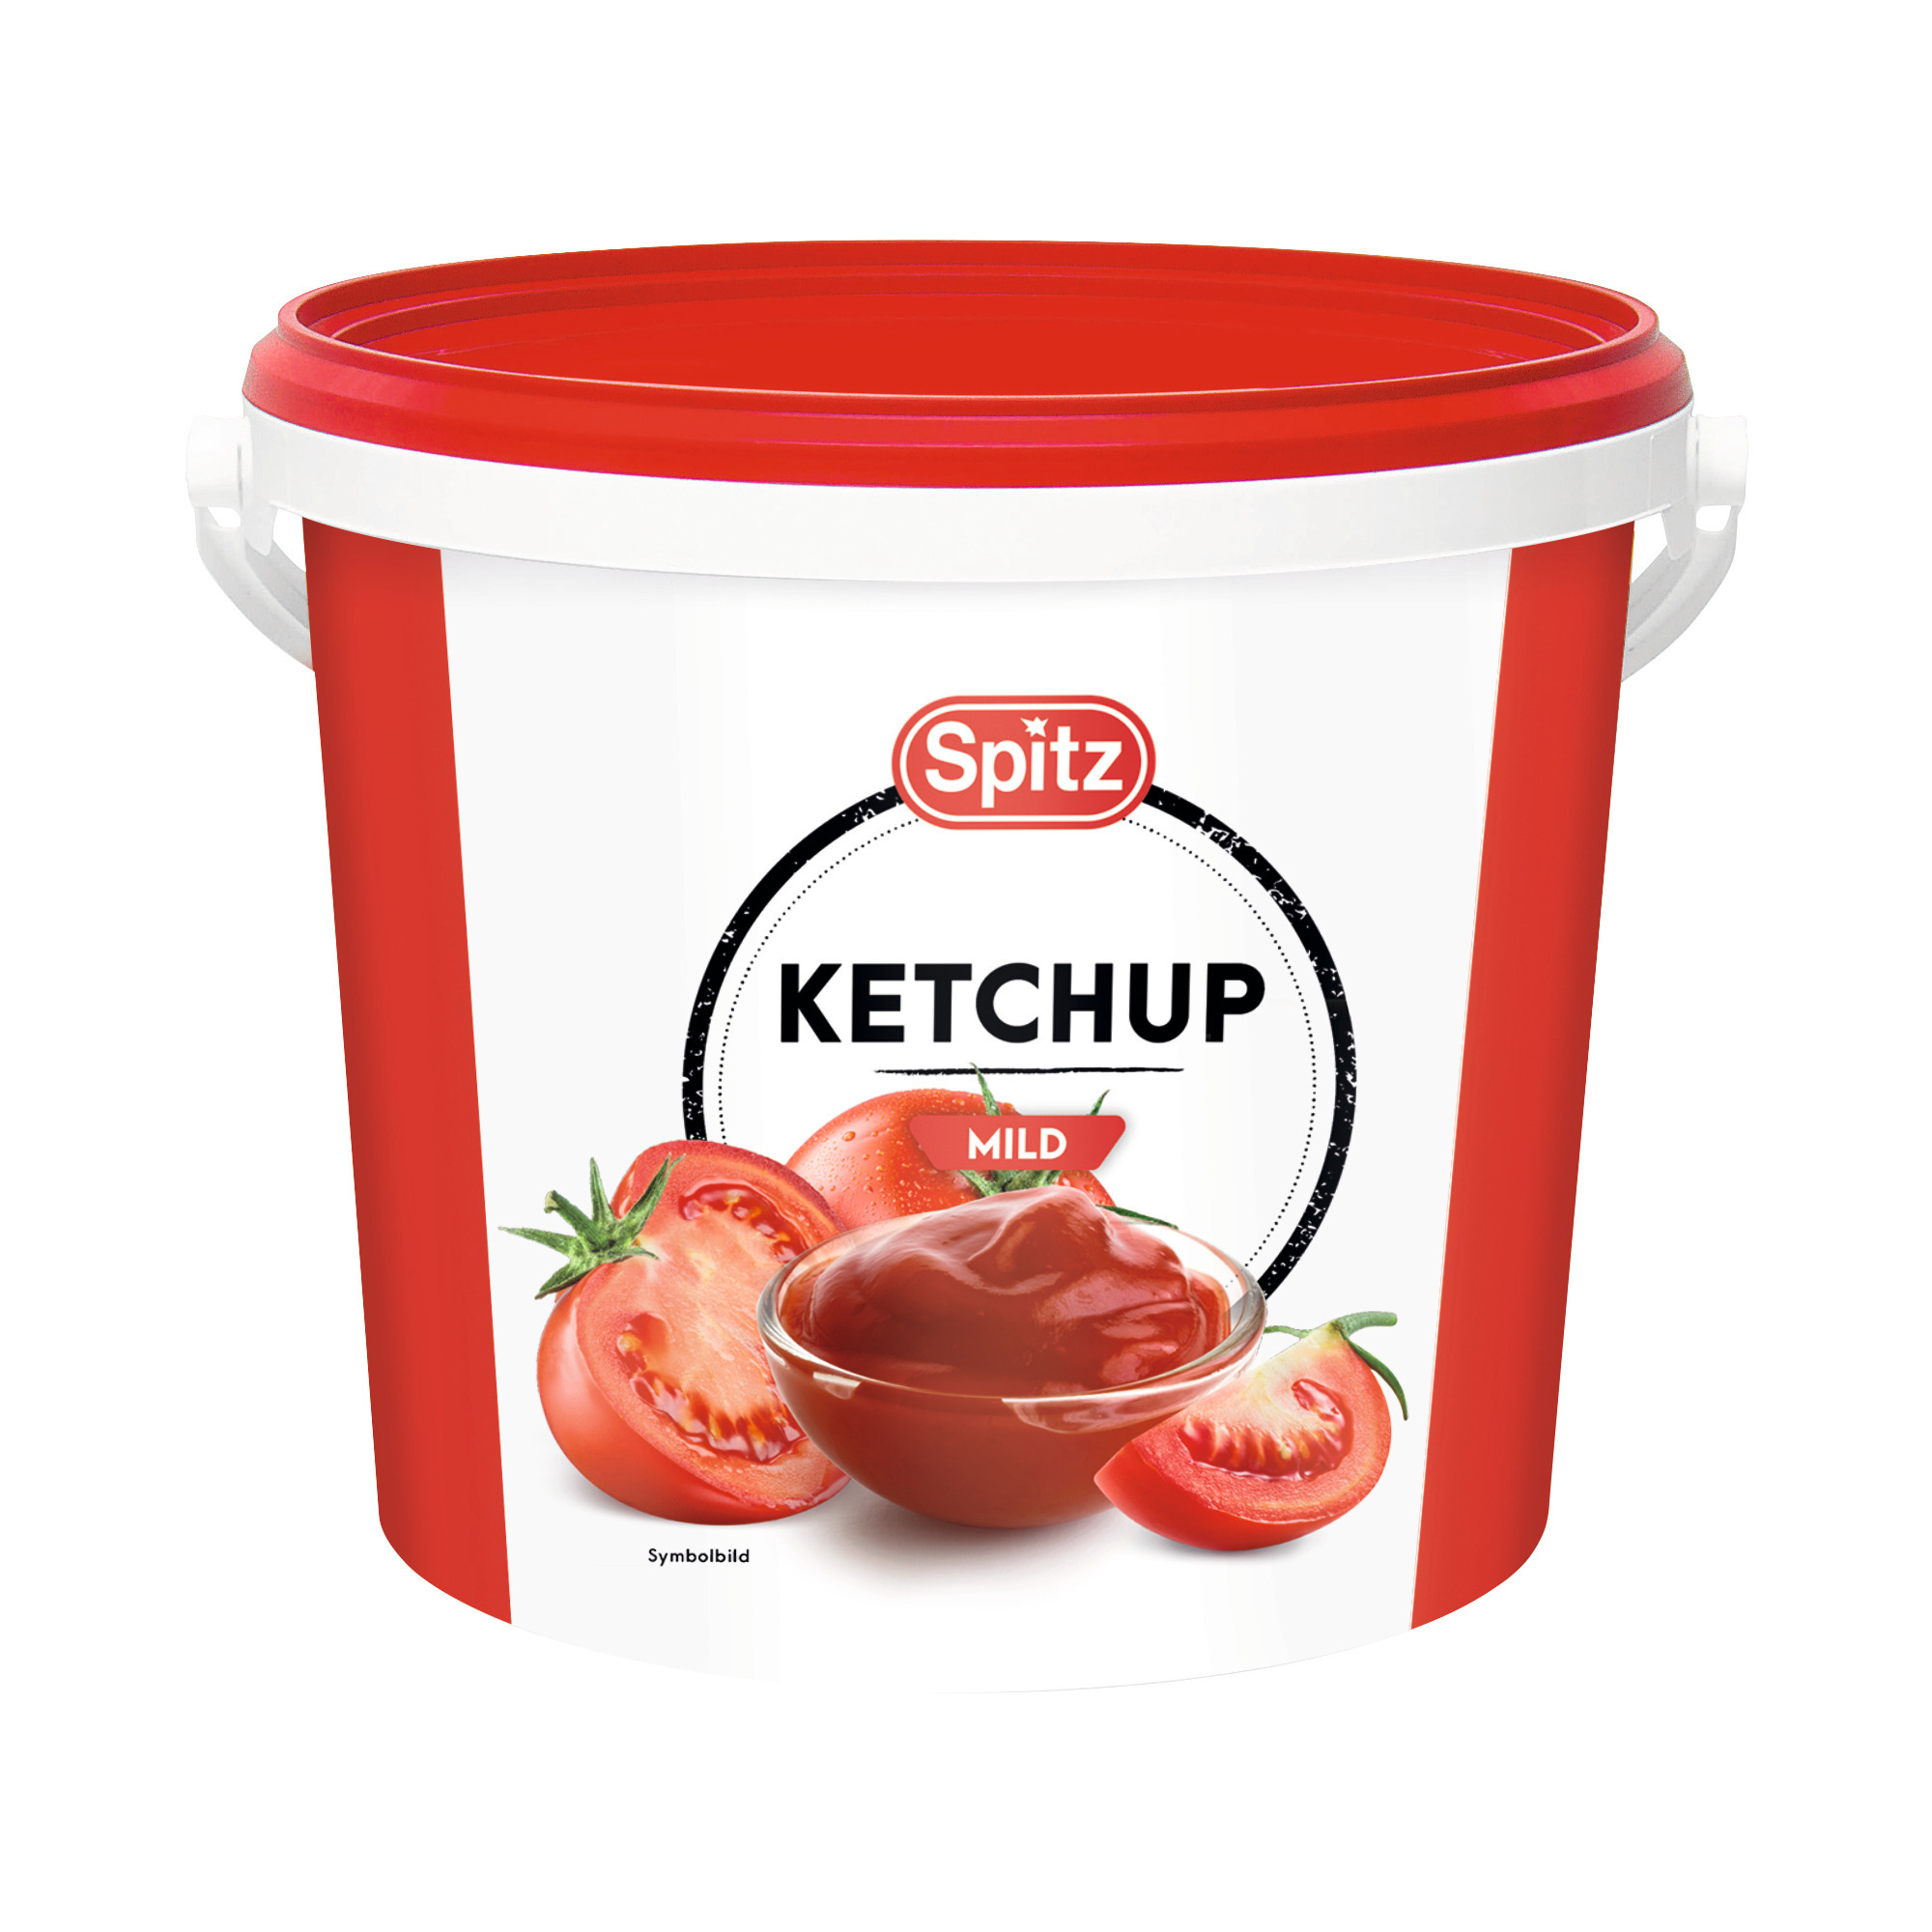 Spitz Ketchup mild 10kg